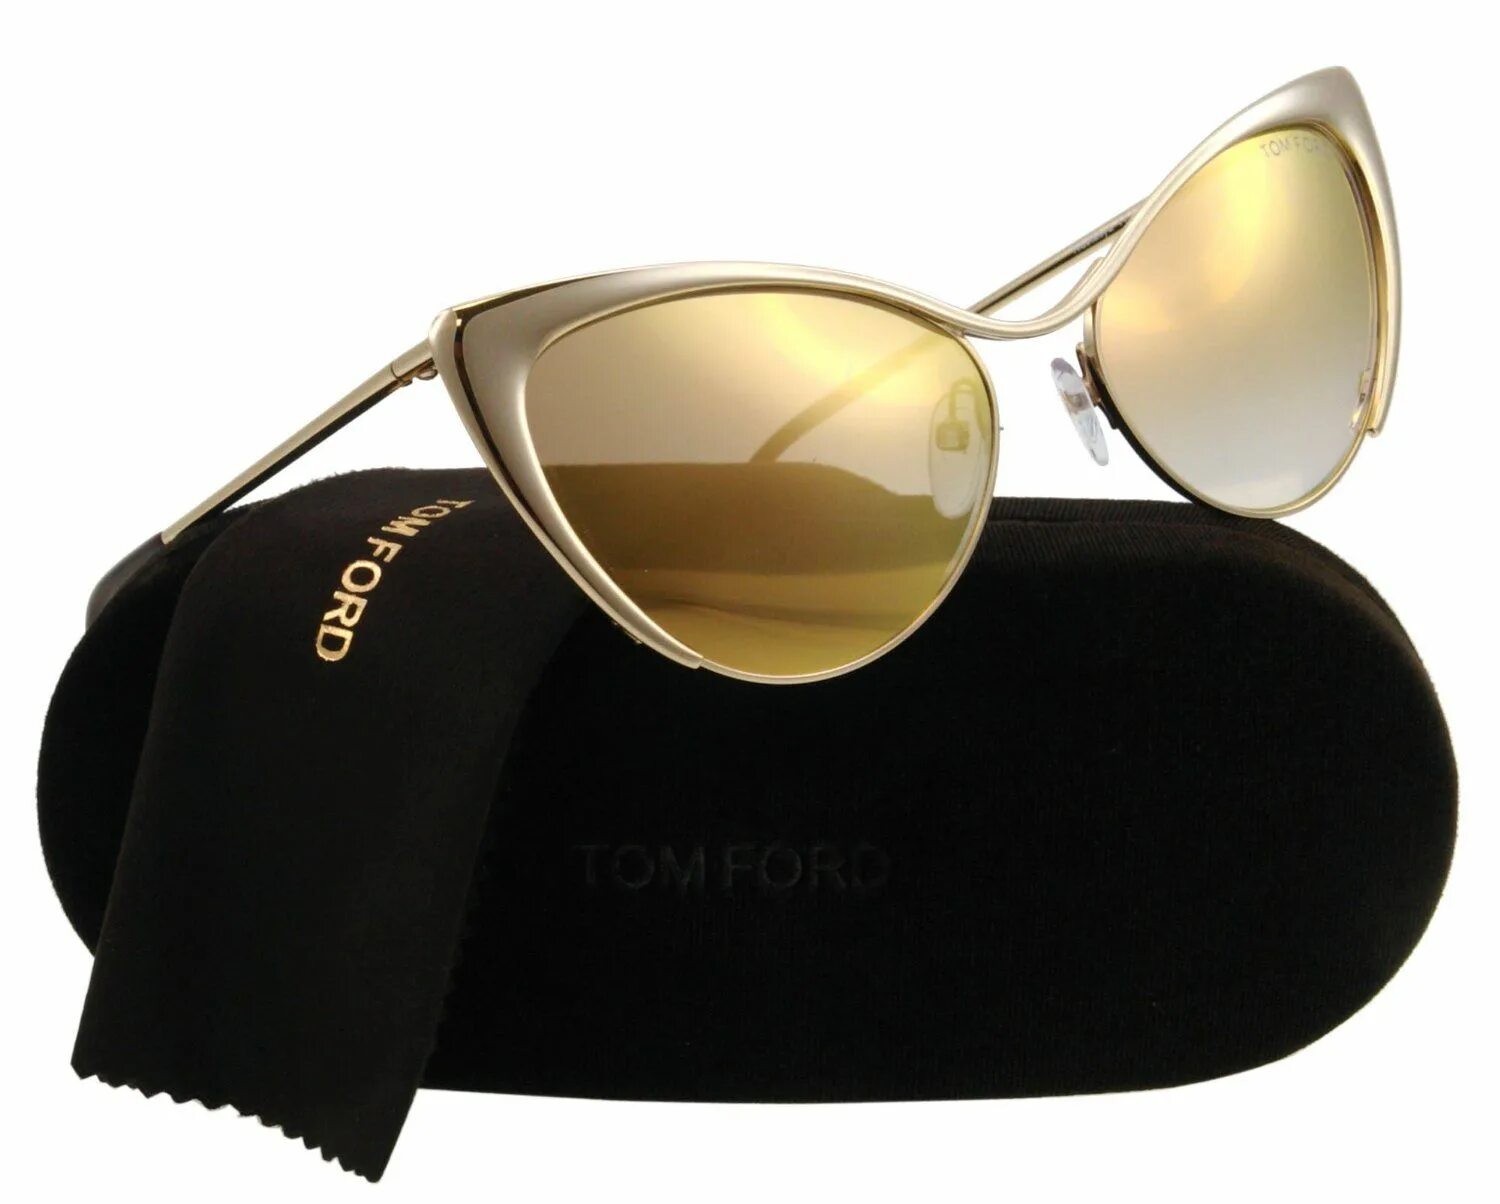 Очки Tom Ford 5348. Tom Ford Gina очки. Tom Ford Sunglasses очки. Tom Ford Sunglasses tf885. Золотые очки купить